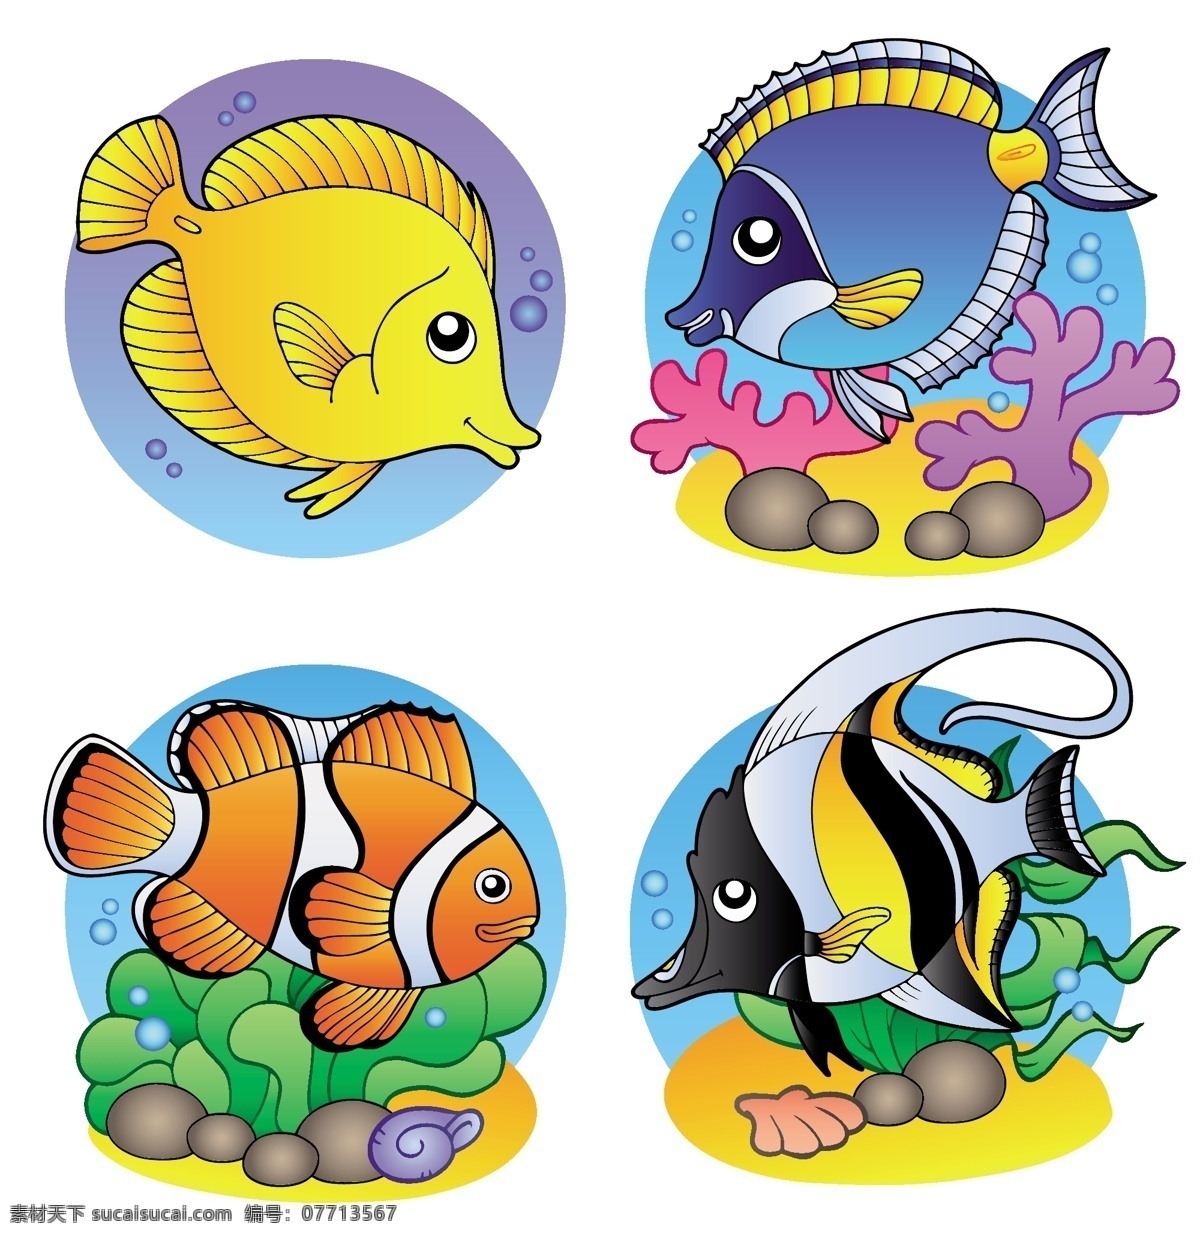 卡通 海洋生物 矢量 素材图片 海洋 金鱼 生物 生物世界 矢量素材 鱼 鱼类 热带雨 观赏鱼